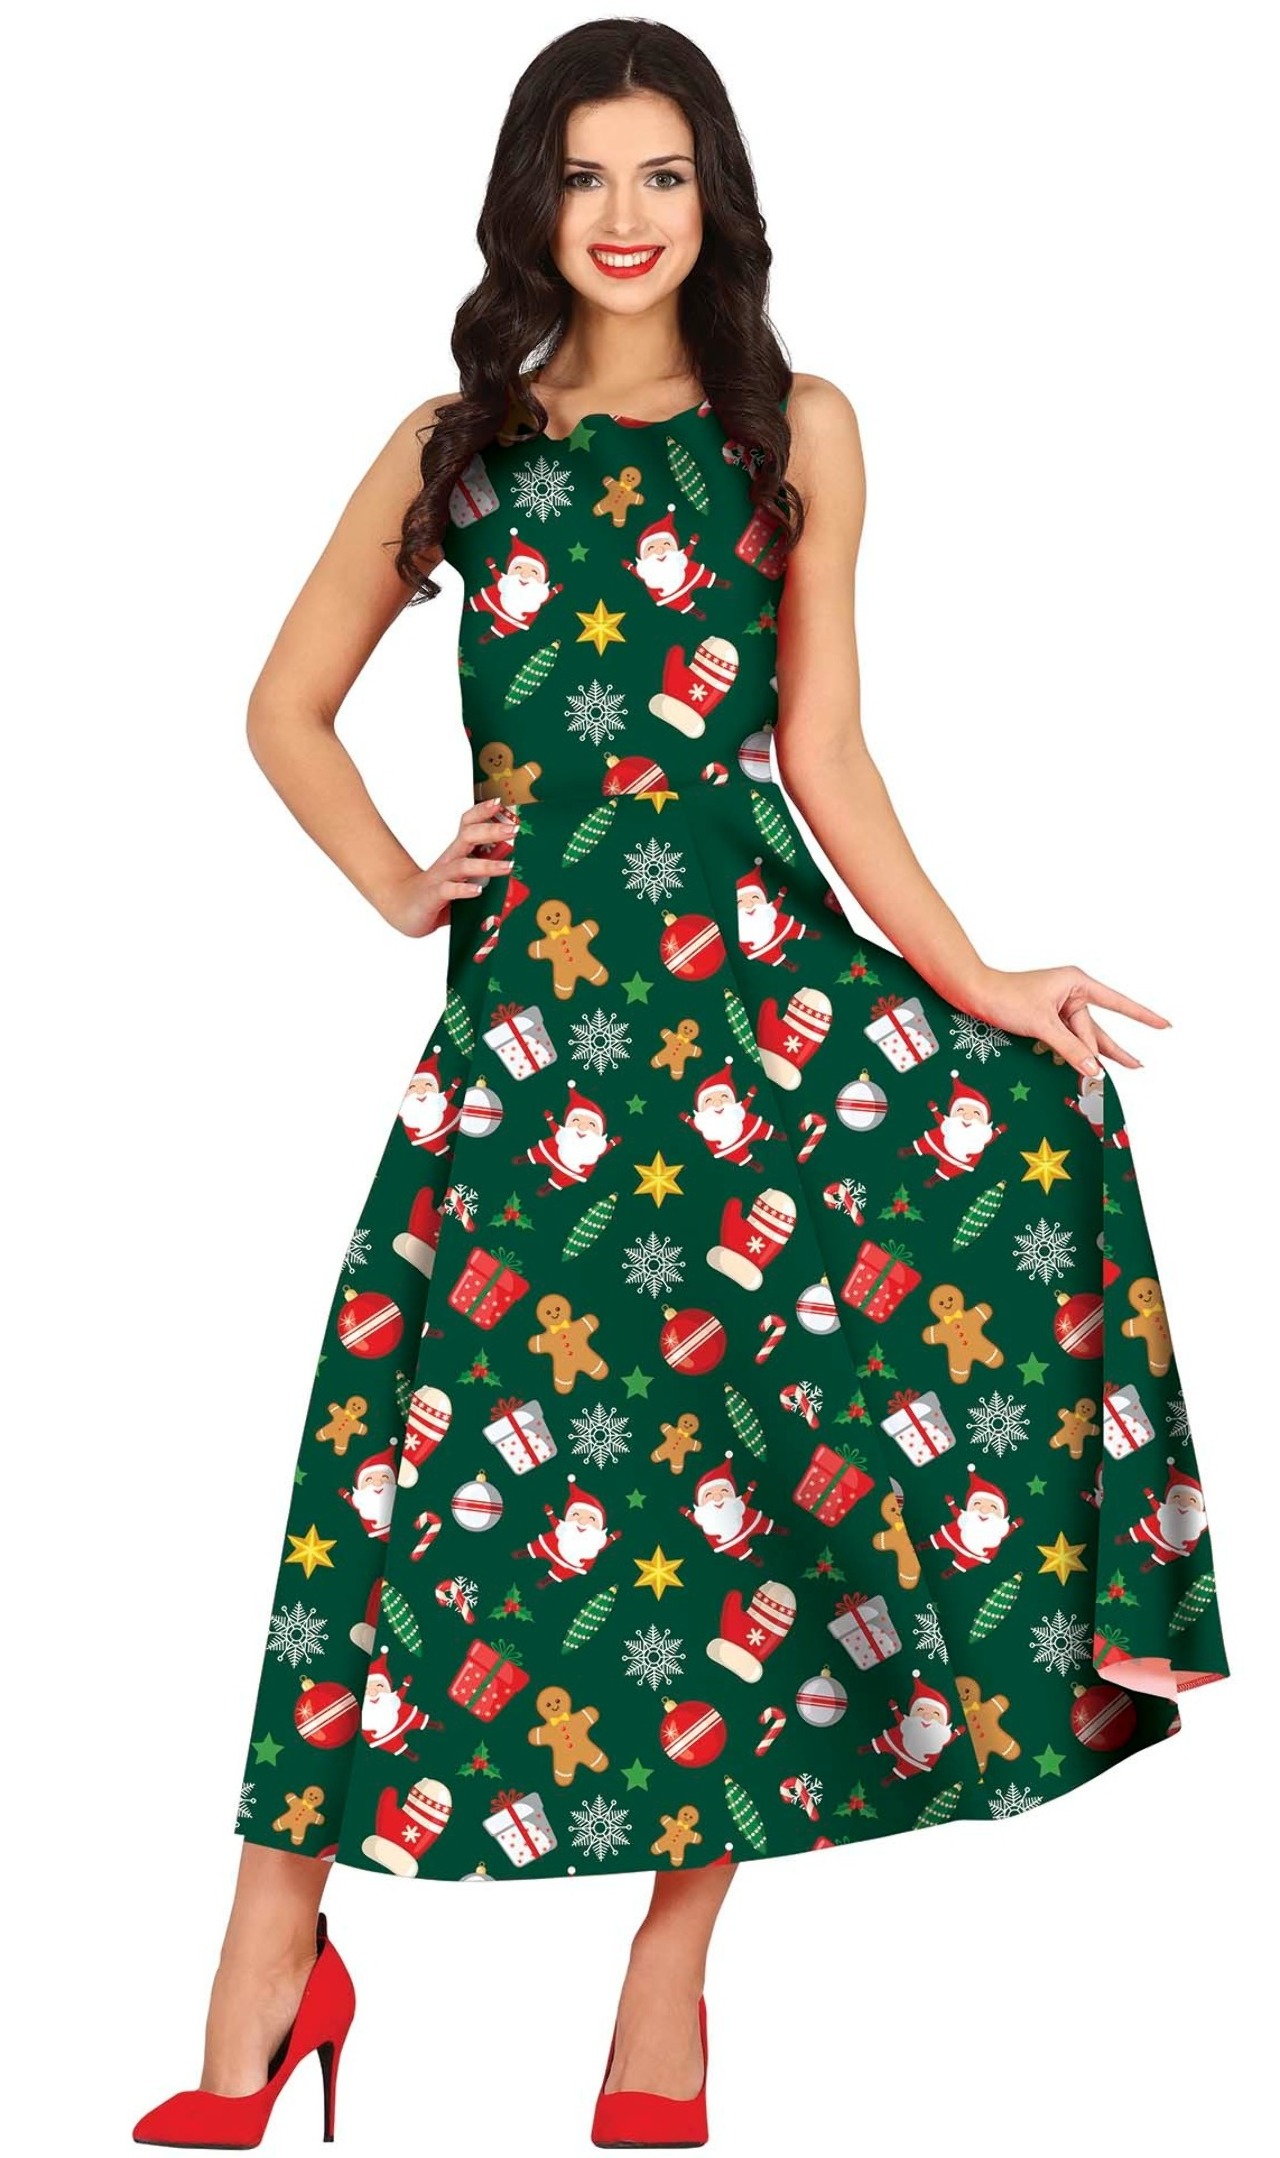 obvio María Mantenimiento Comprar online Disfraz de Navidad Verde para mujer